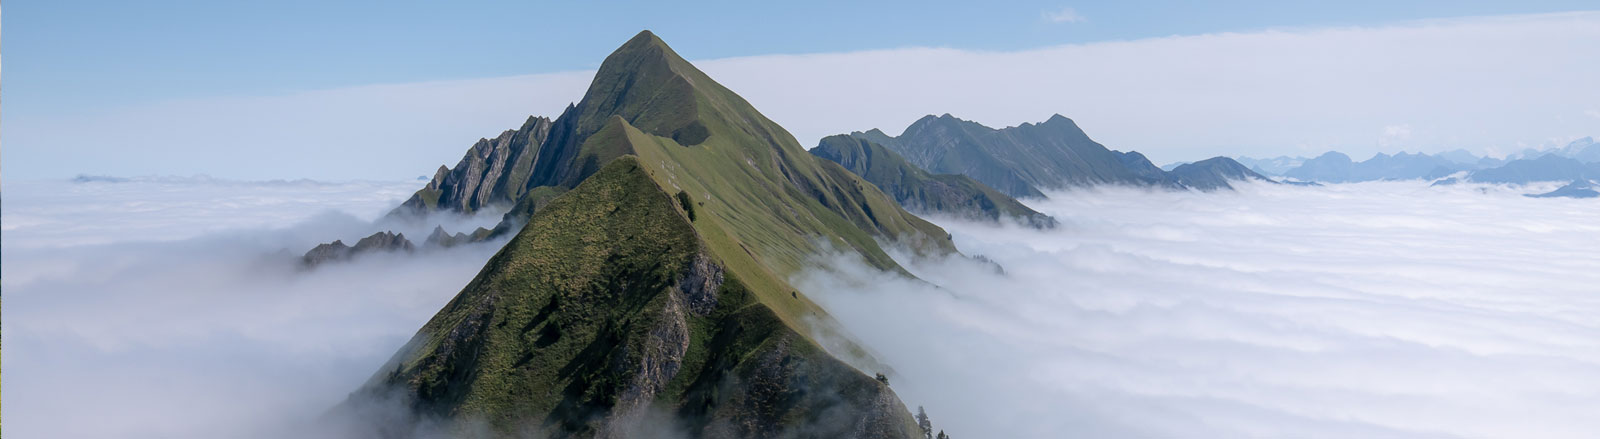 Island in a sea of clouds. Brienzergrat, Sunday 7 August, 2022.